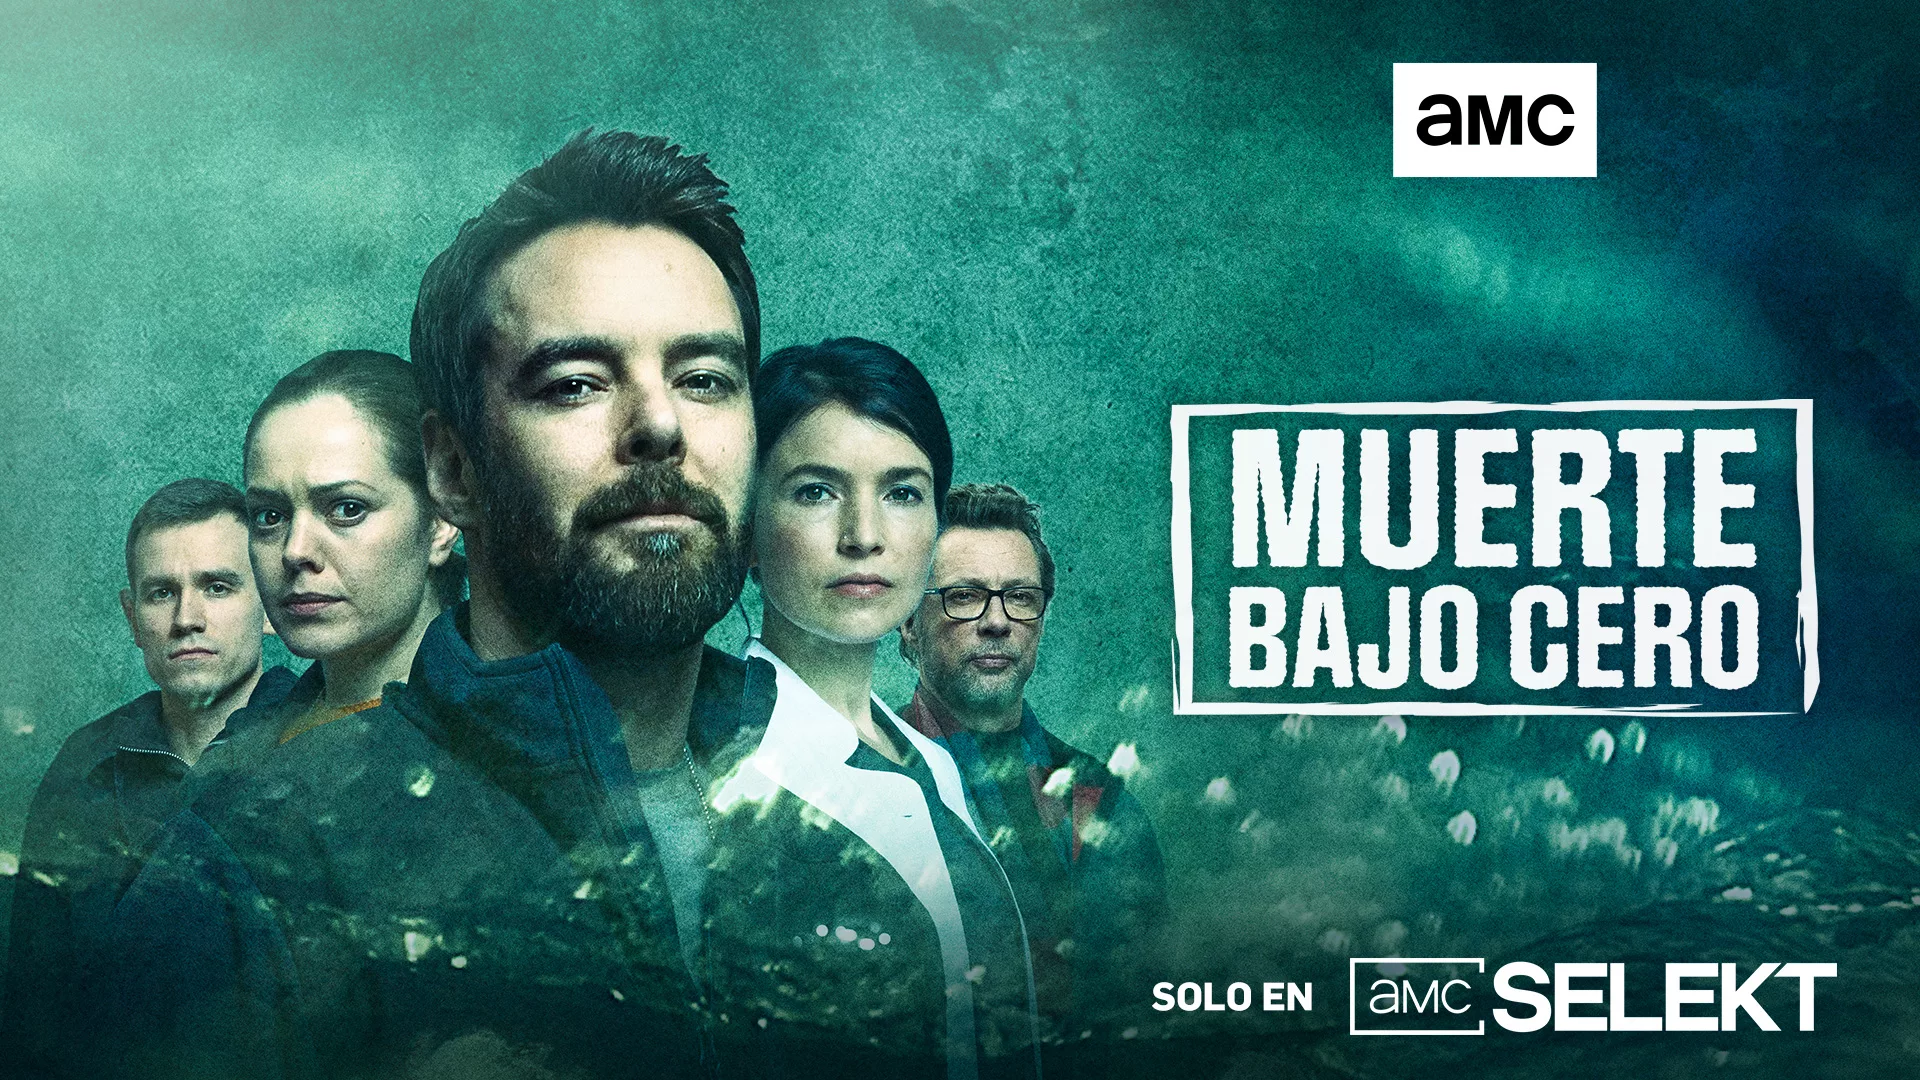 El canal de televisión AMC estrena en exclusiva la primera temporada de Muerte bajo cero